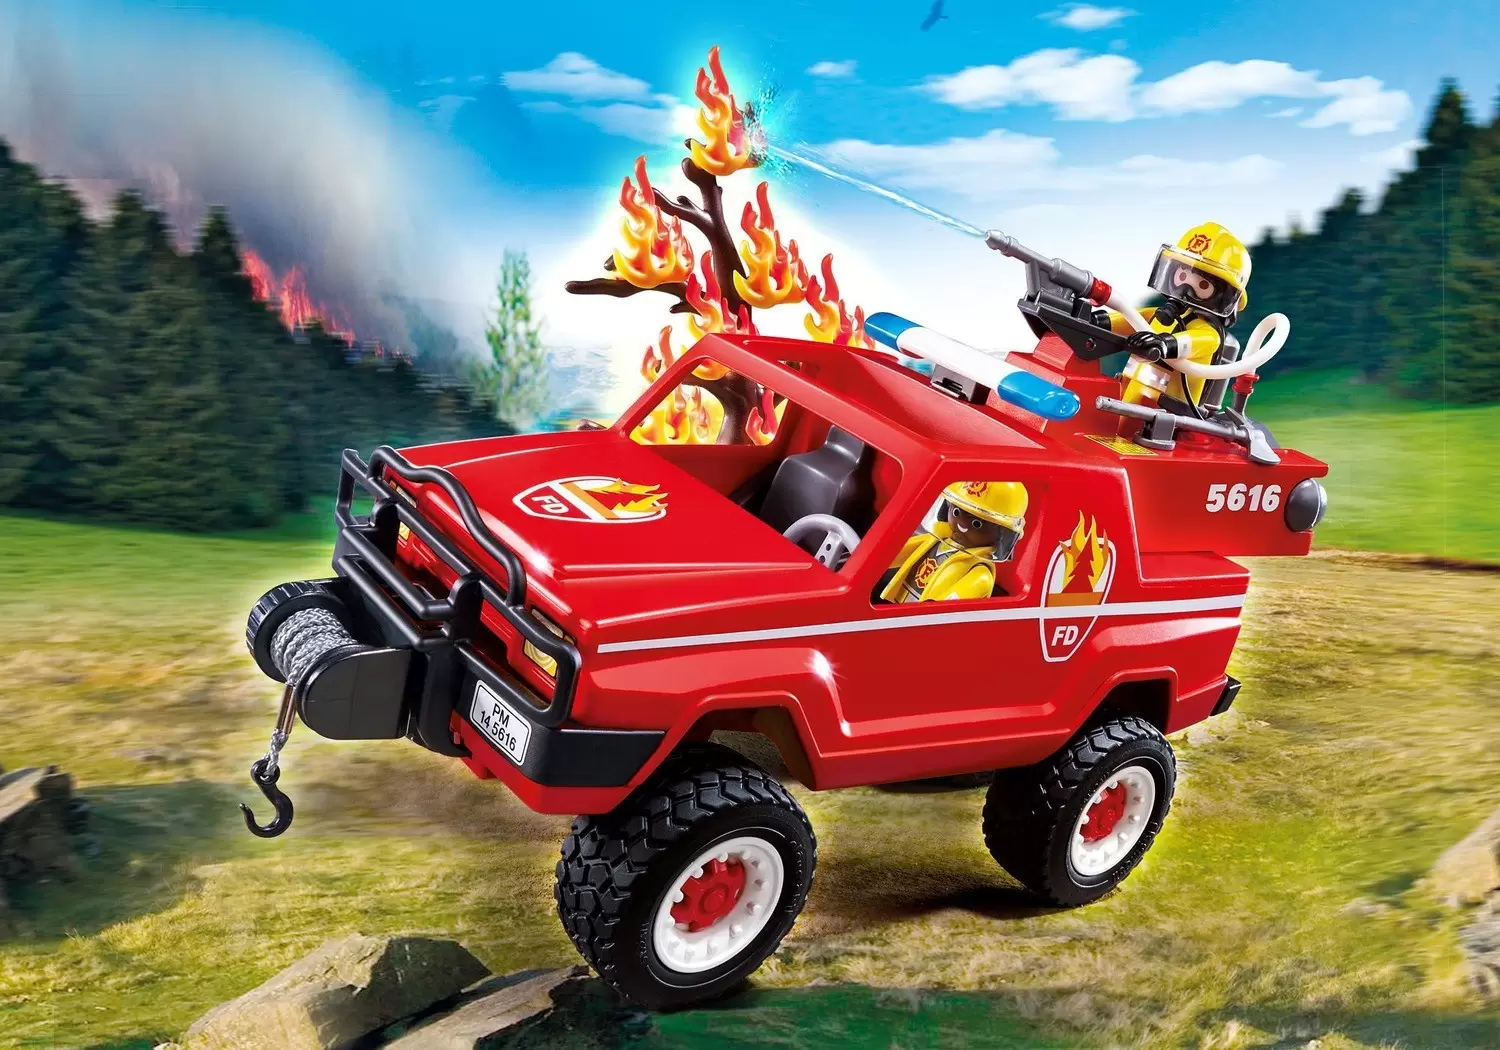 Playmobil Firemen - Fire terrain truck